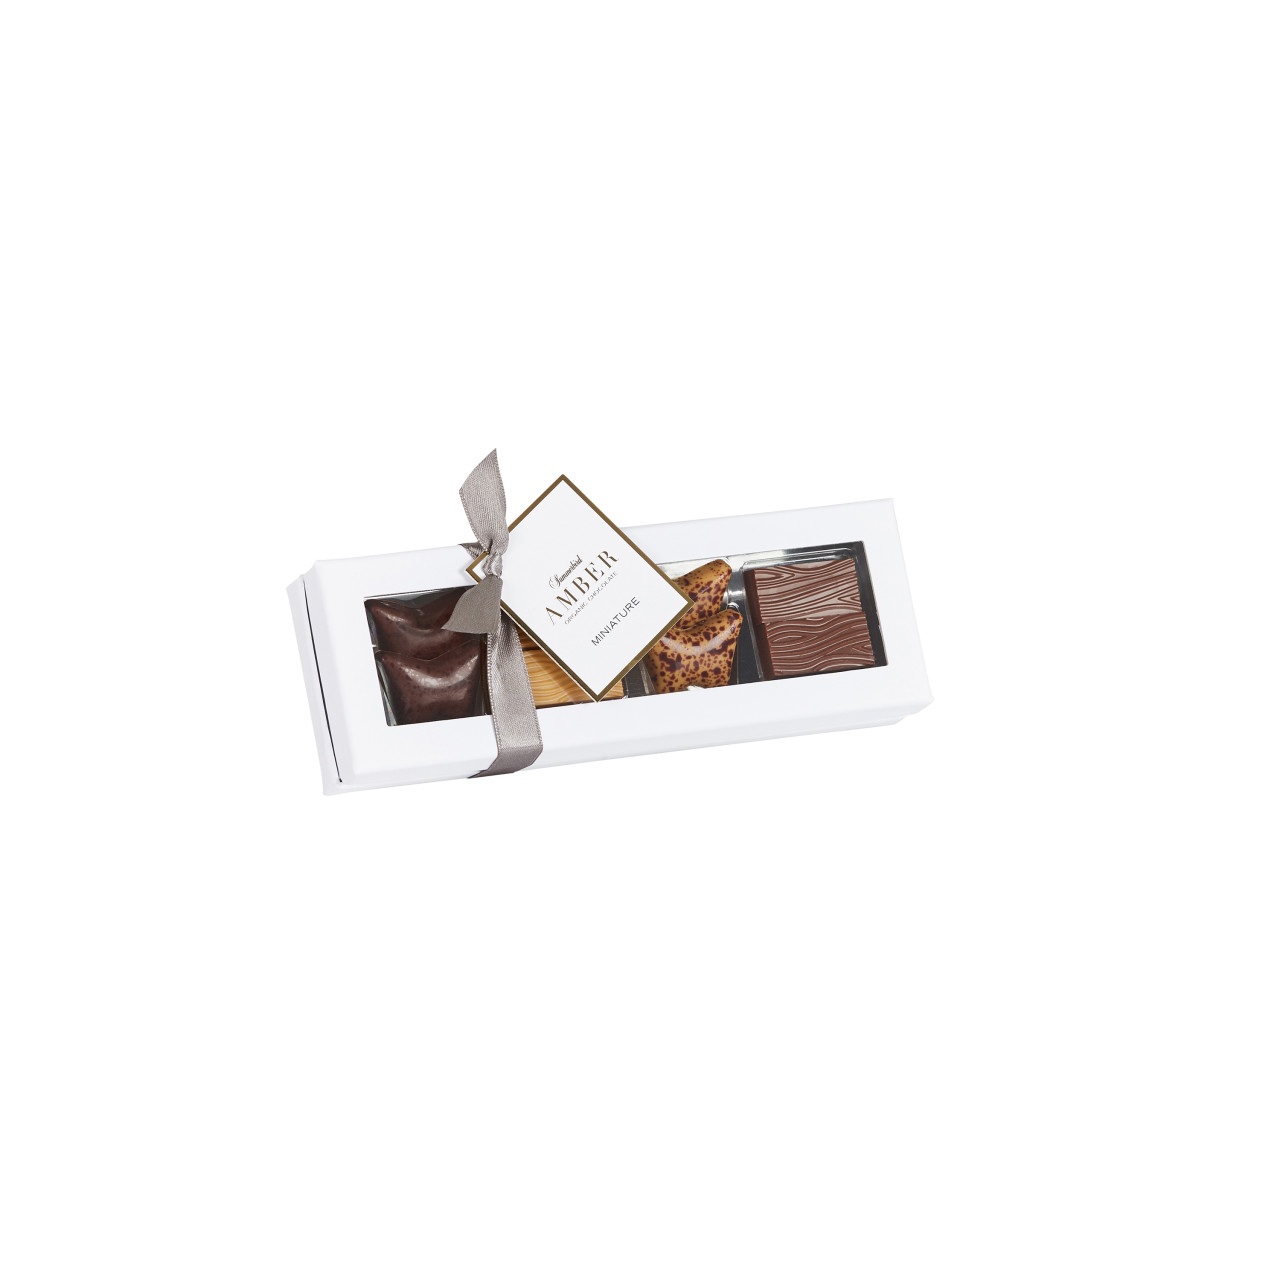 Amber Miniature - Geschenkbox mit 8 raffinierten Bio Amber Miniatur Pralinen